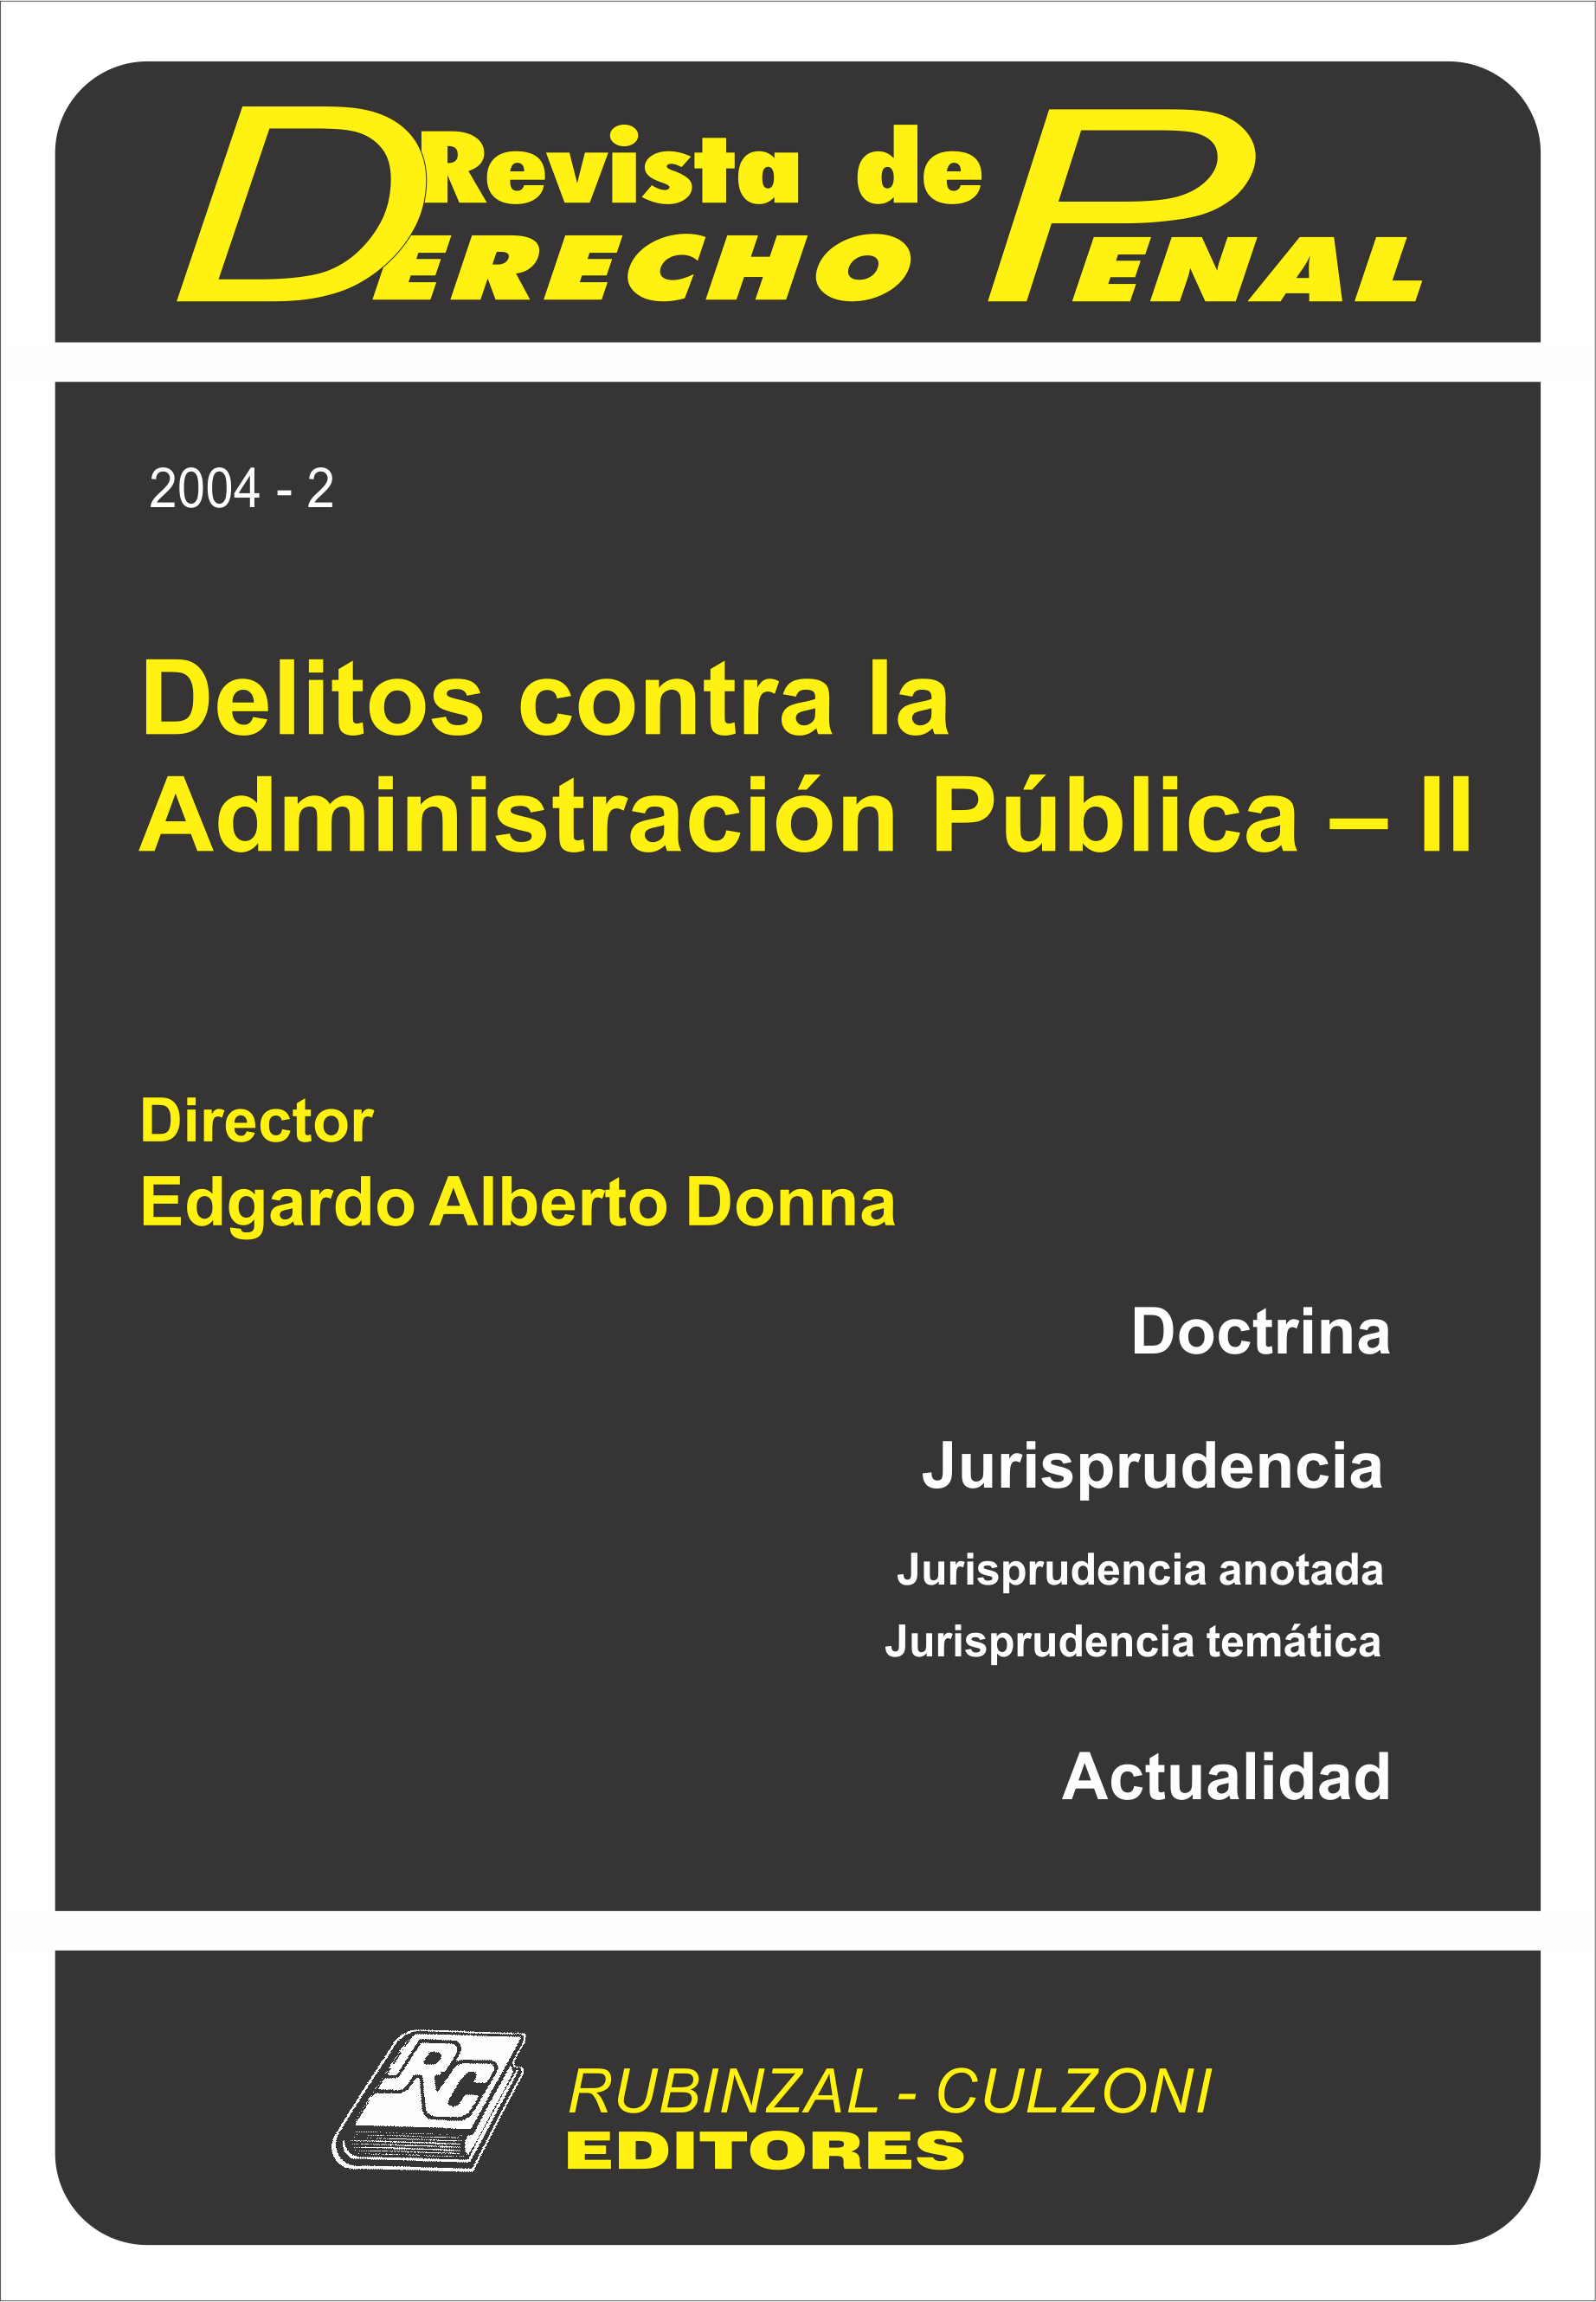 Revista de Derecho Penal - Delitos contra la Administración Pública - II